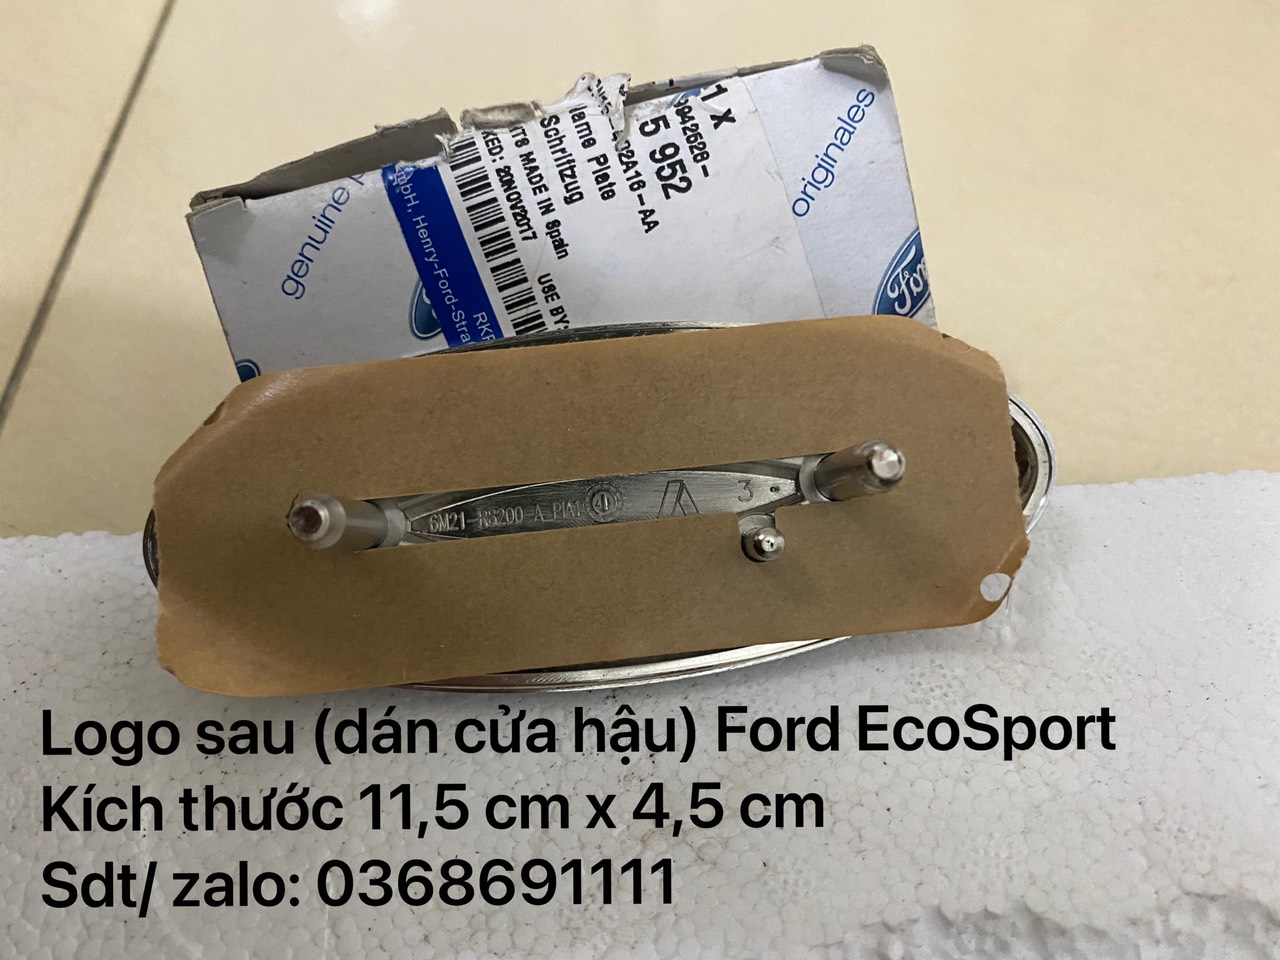 Lô gô sau, biểu tượng chữ Ford trên cánh cửa hậu Ford EcoSport / CN15402A16AA4